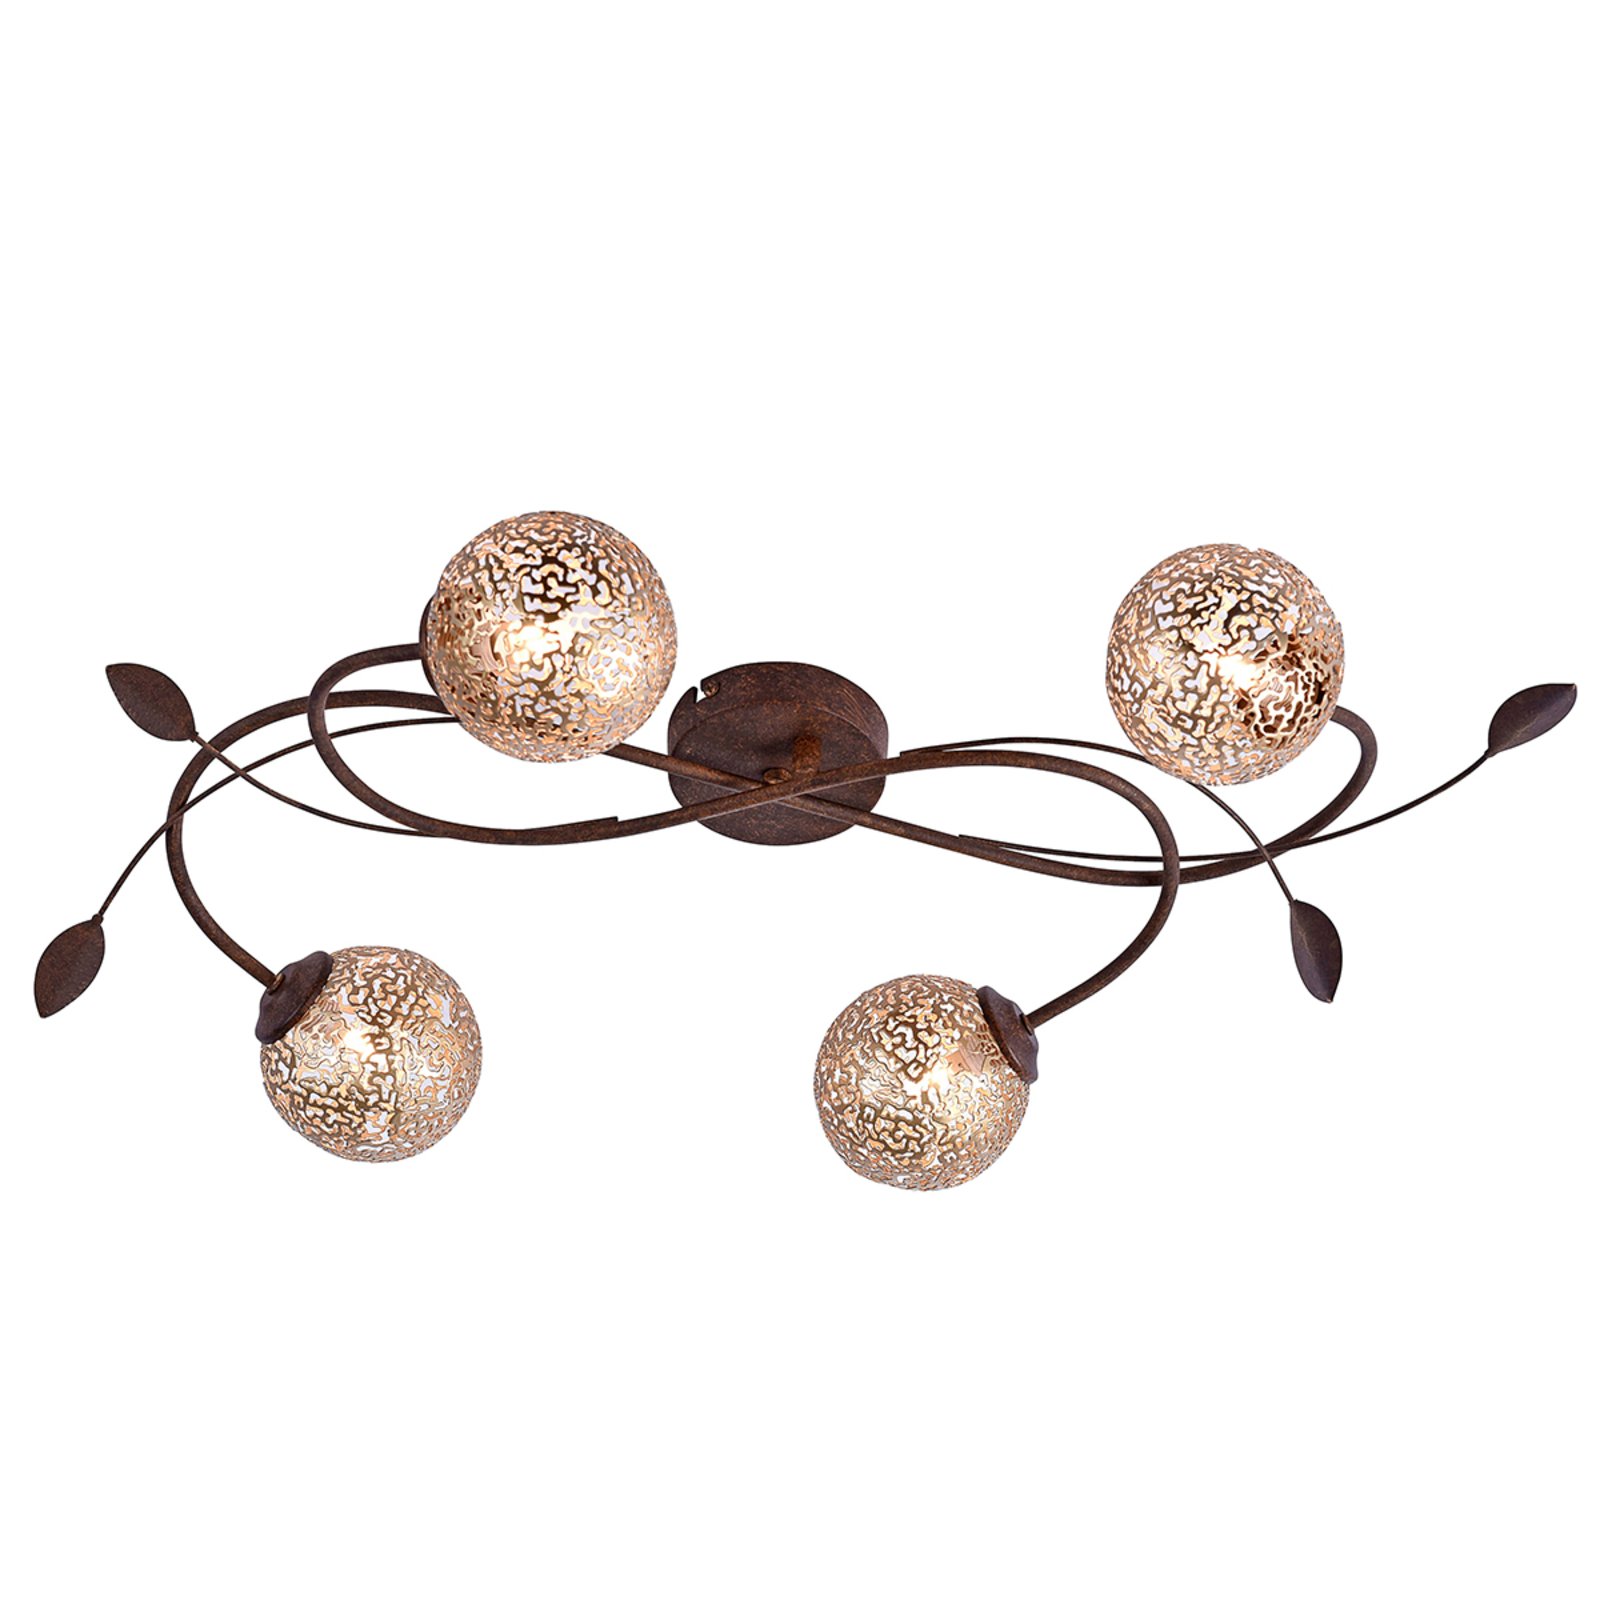 Loftslampe Greta med blomsterdesign, 4 lyskilder